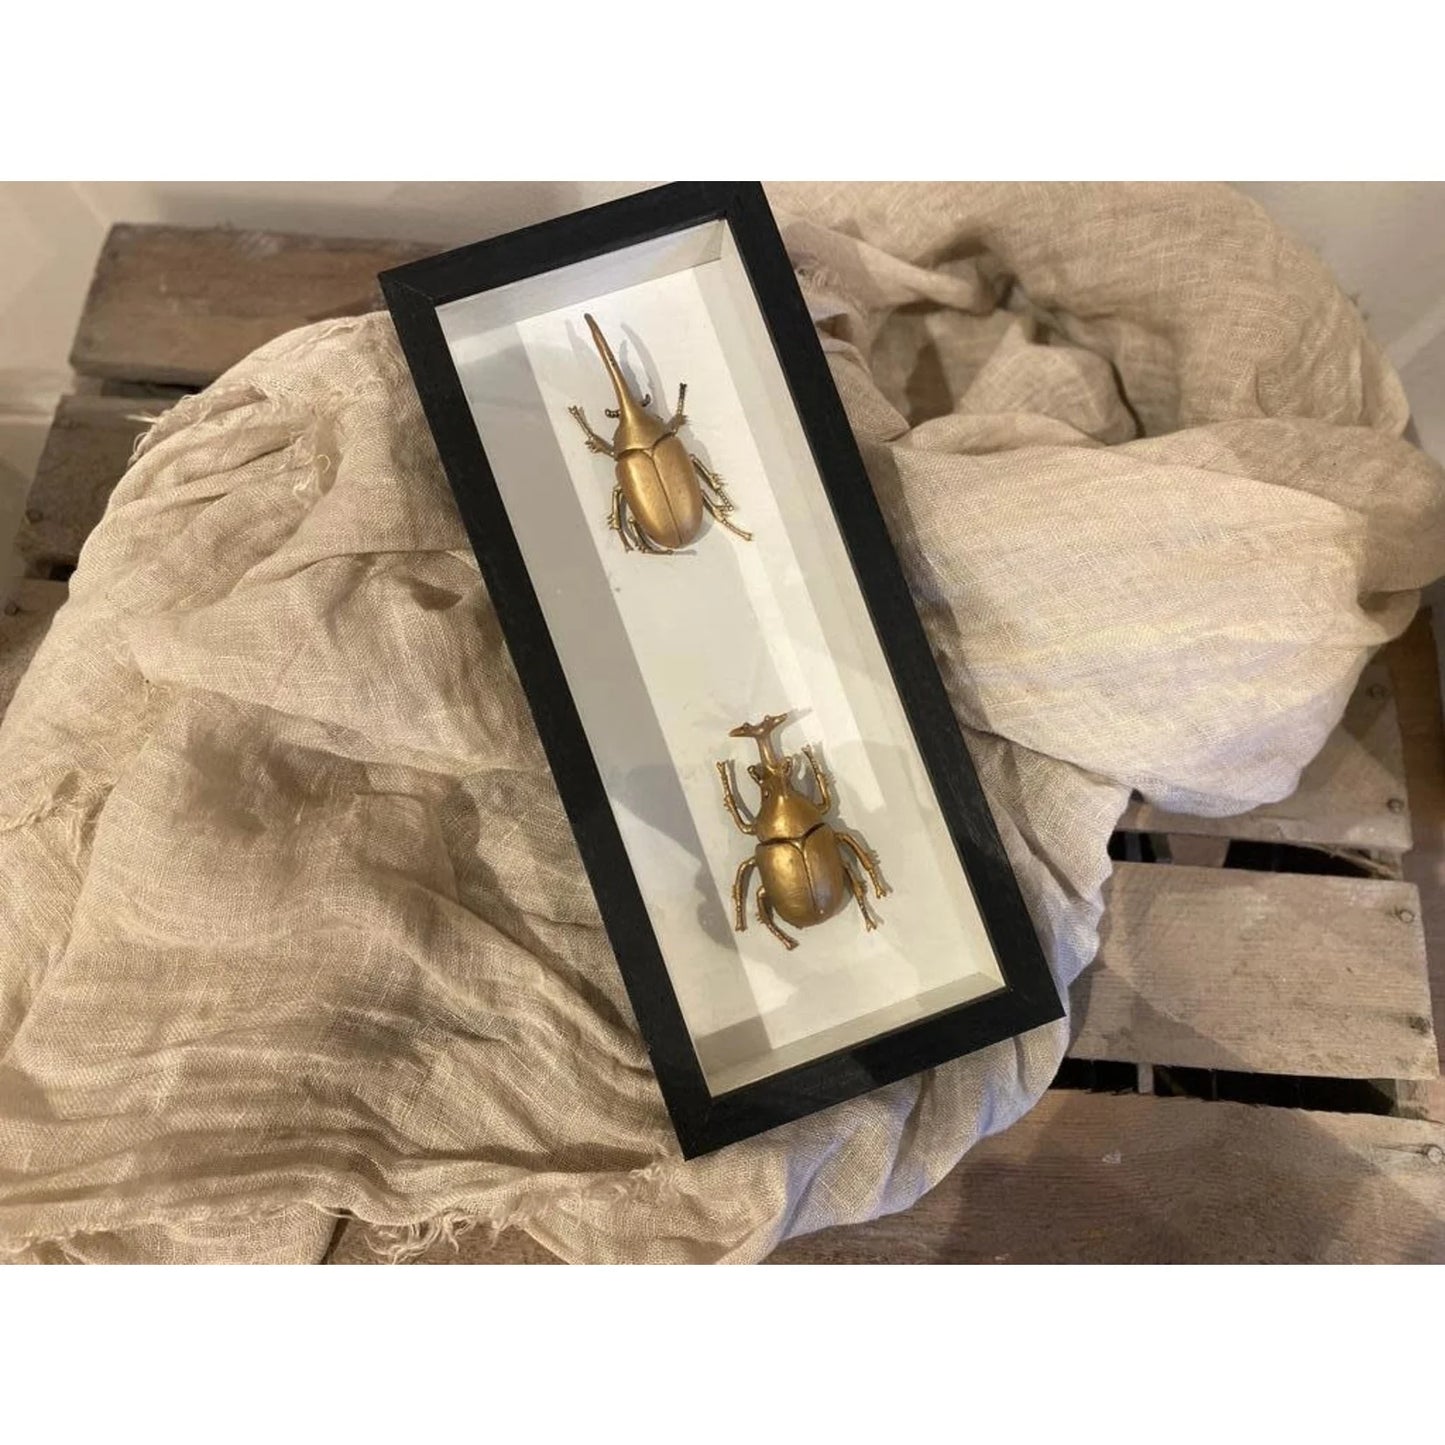 Zwarte lijst met decoratieve gouden insecten.   26,5 x 11,5 cm